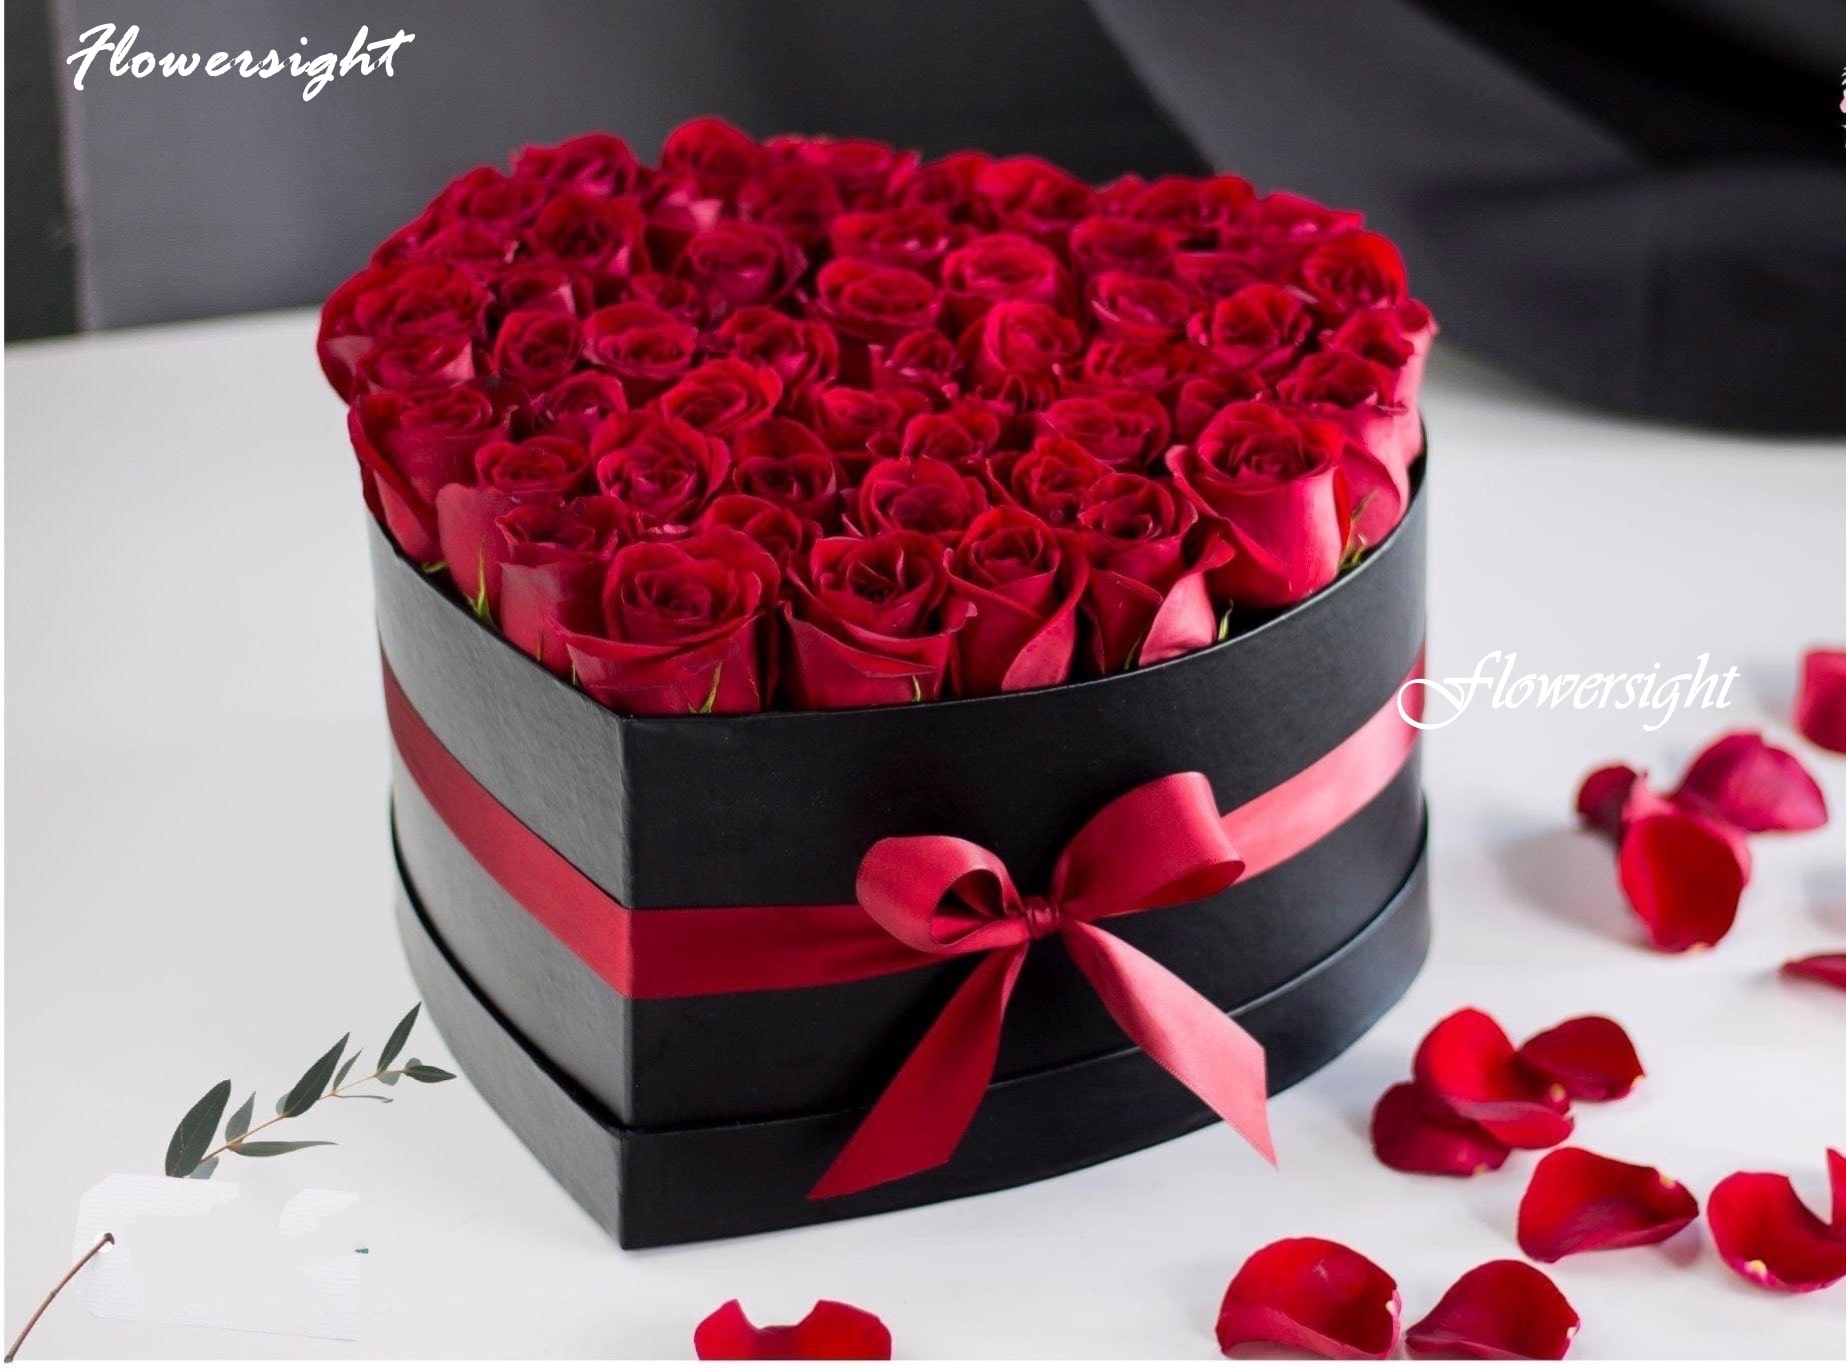 Lẵng hoa hồng sinh nhật hình trái tim sẽ là một món quà tuyệt vời cho nửa kia của bạn